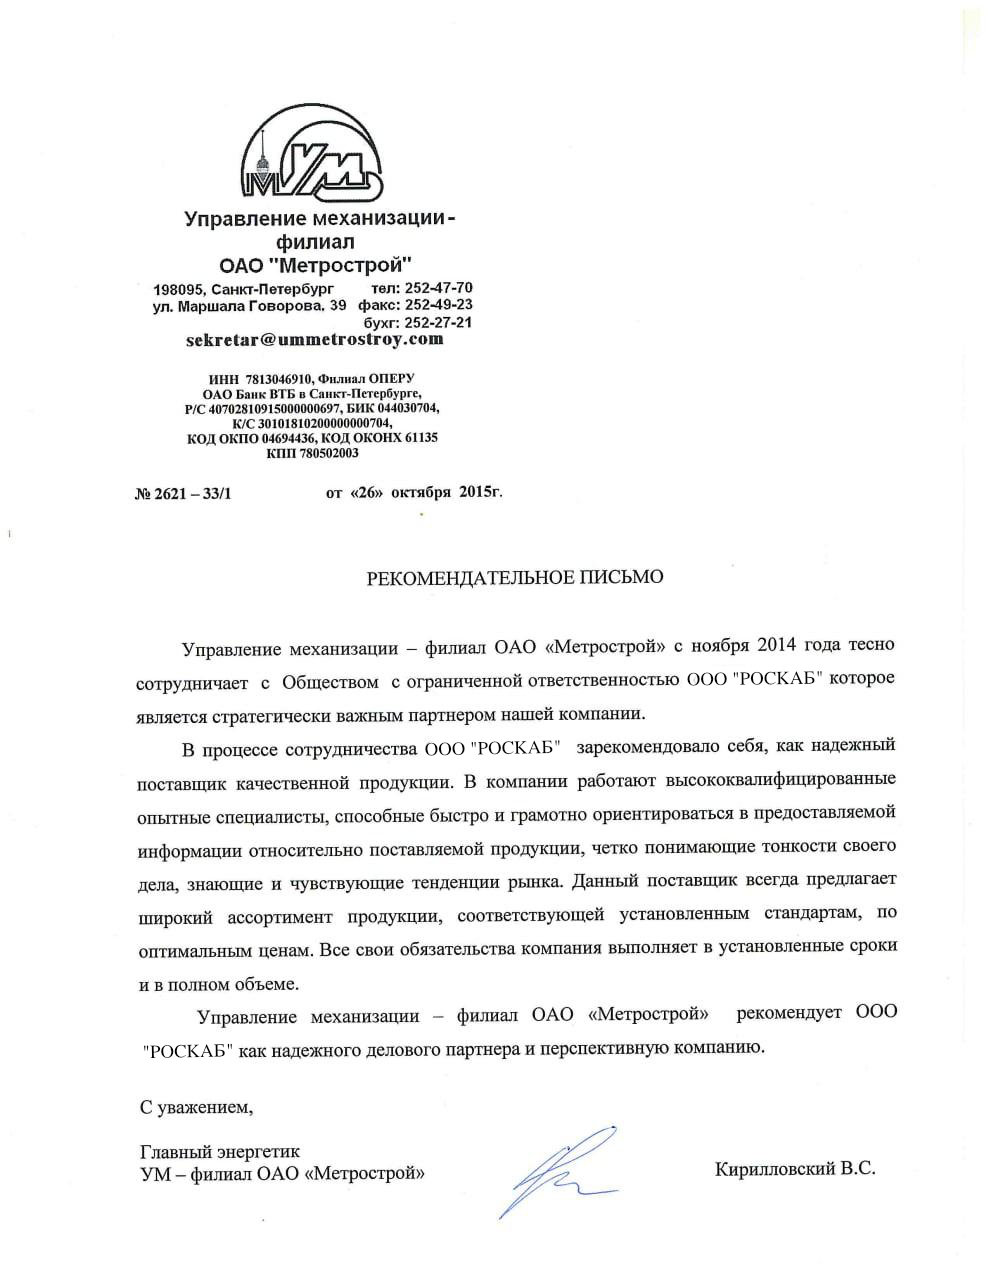 Рекомендательное письмо ОАО "Метрострой"